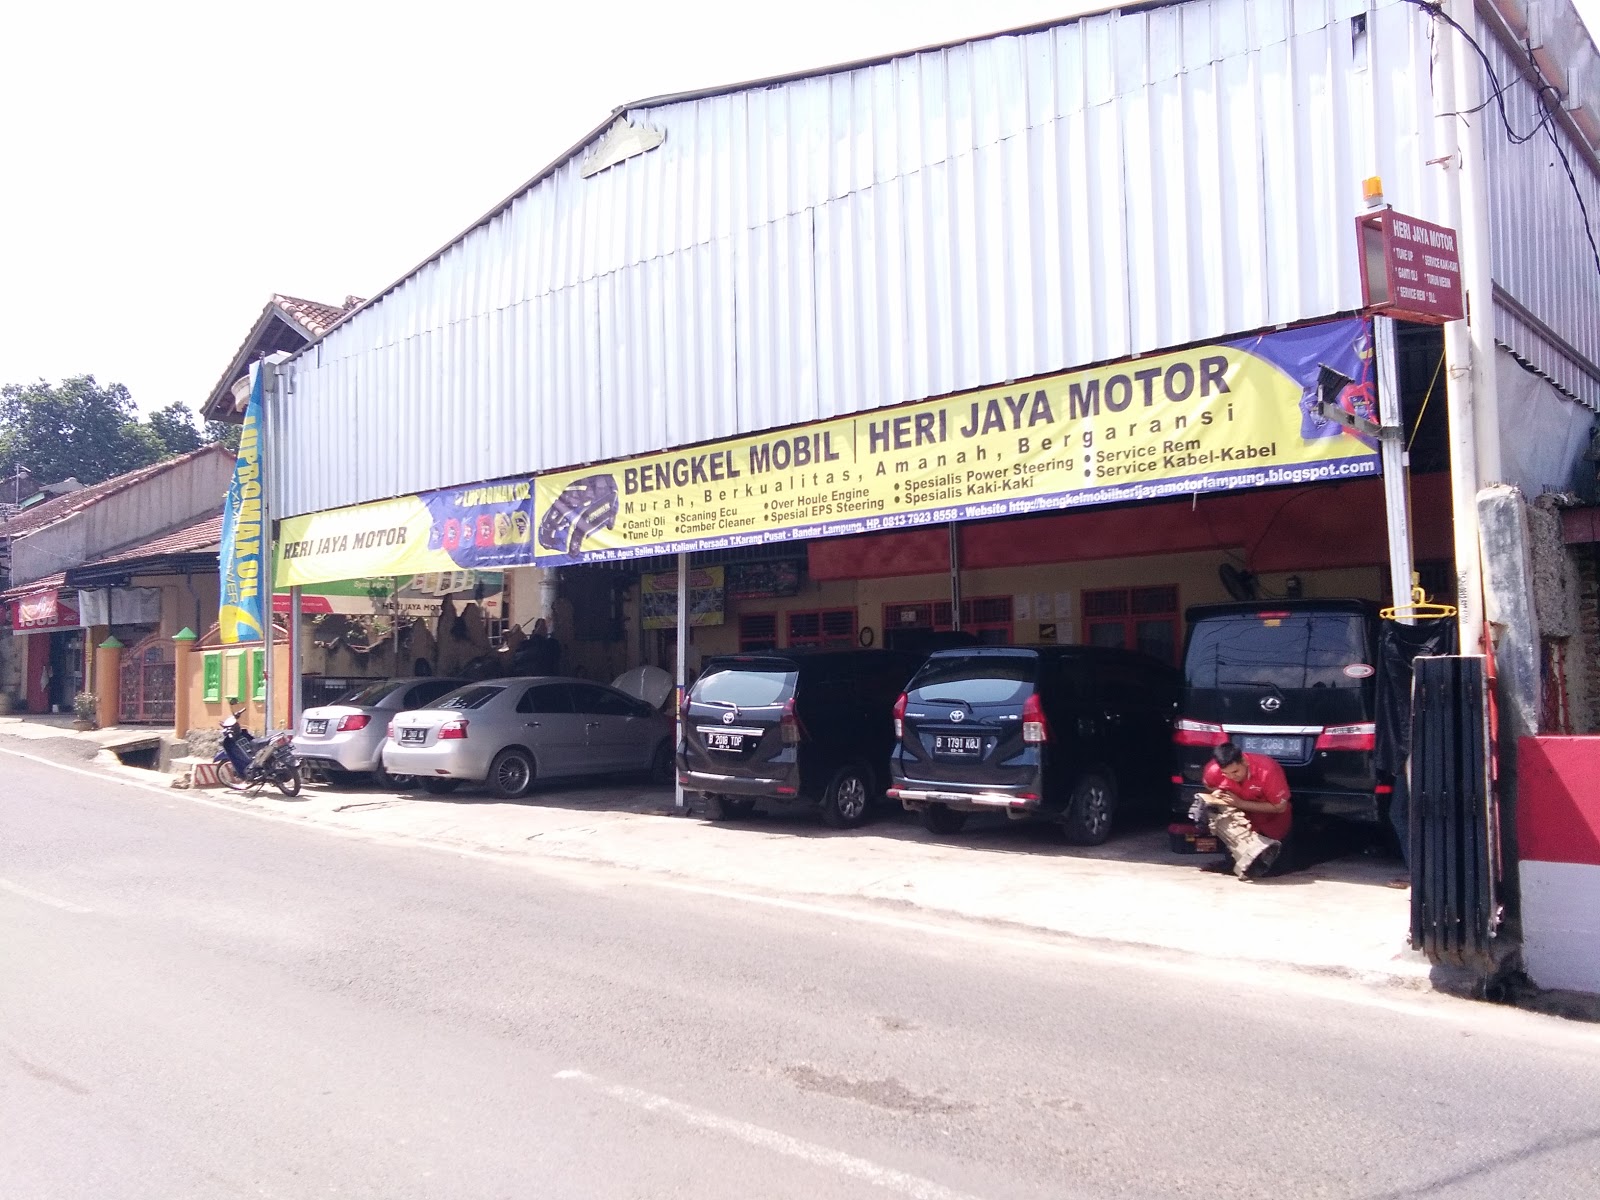 Bengkel Mobil LampungMurahberkualitasamanah Dan Bergaransi